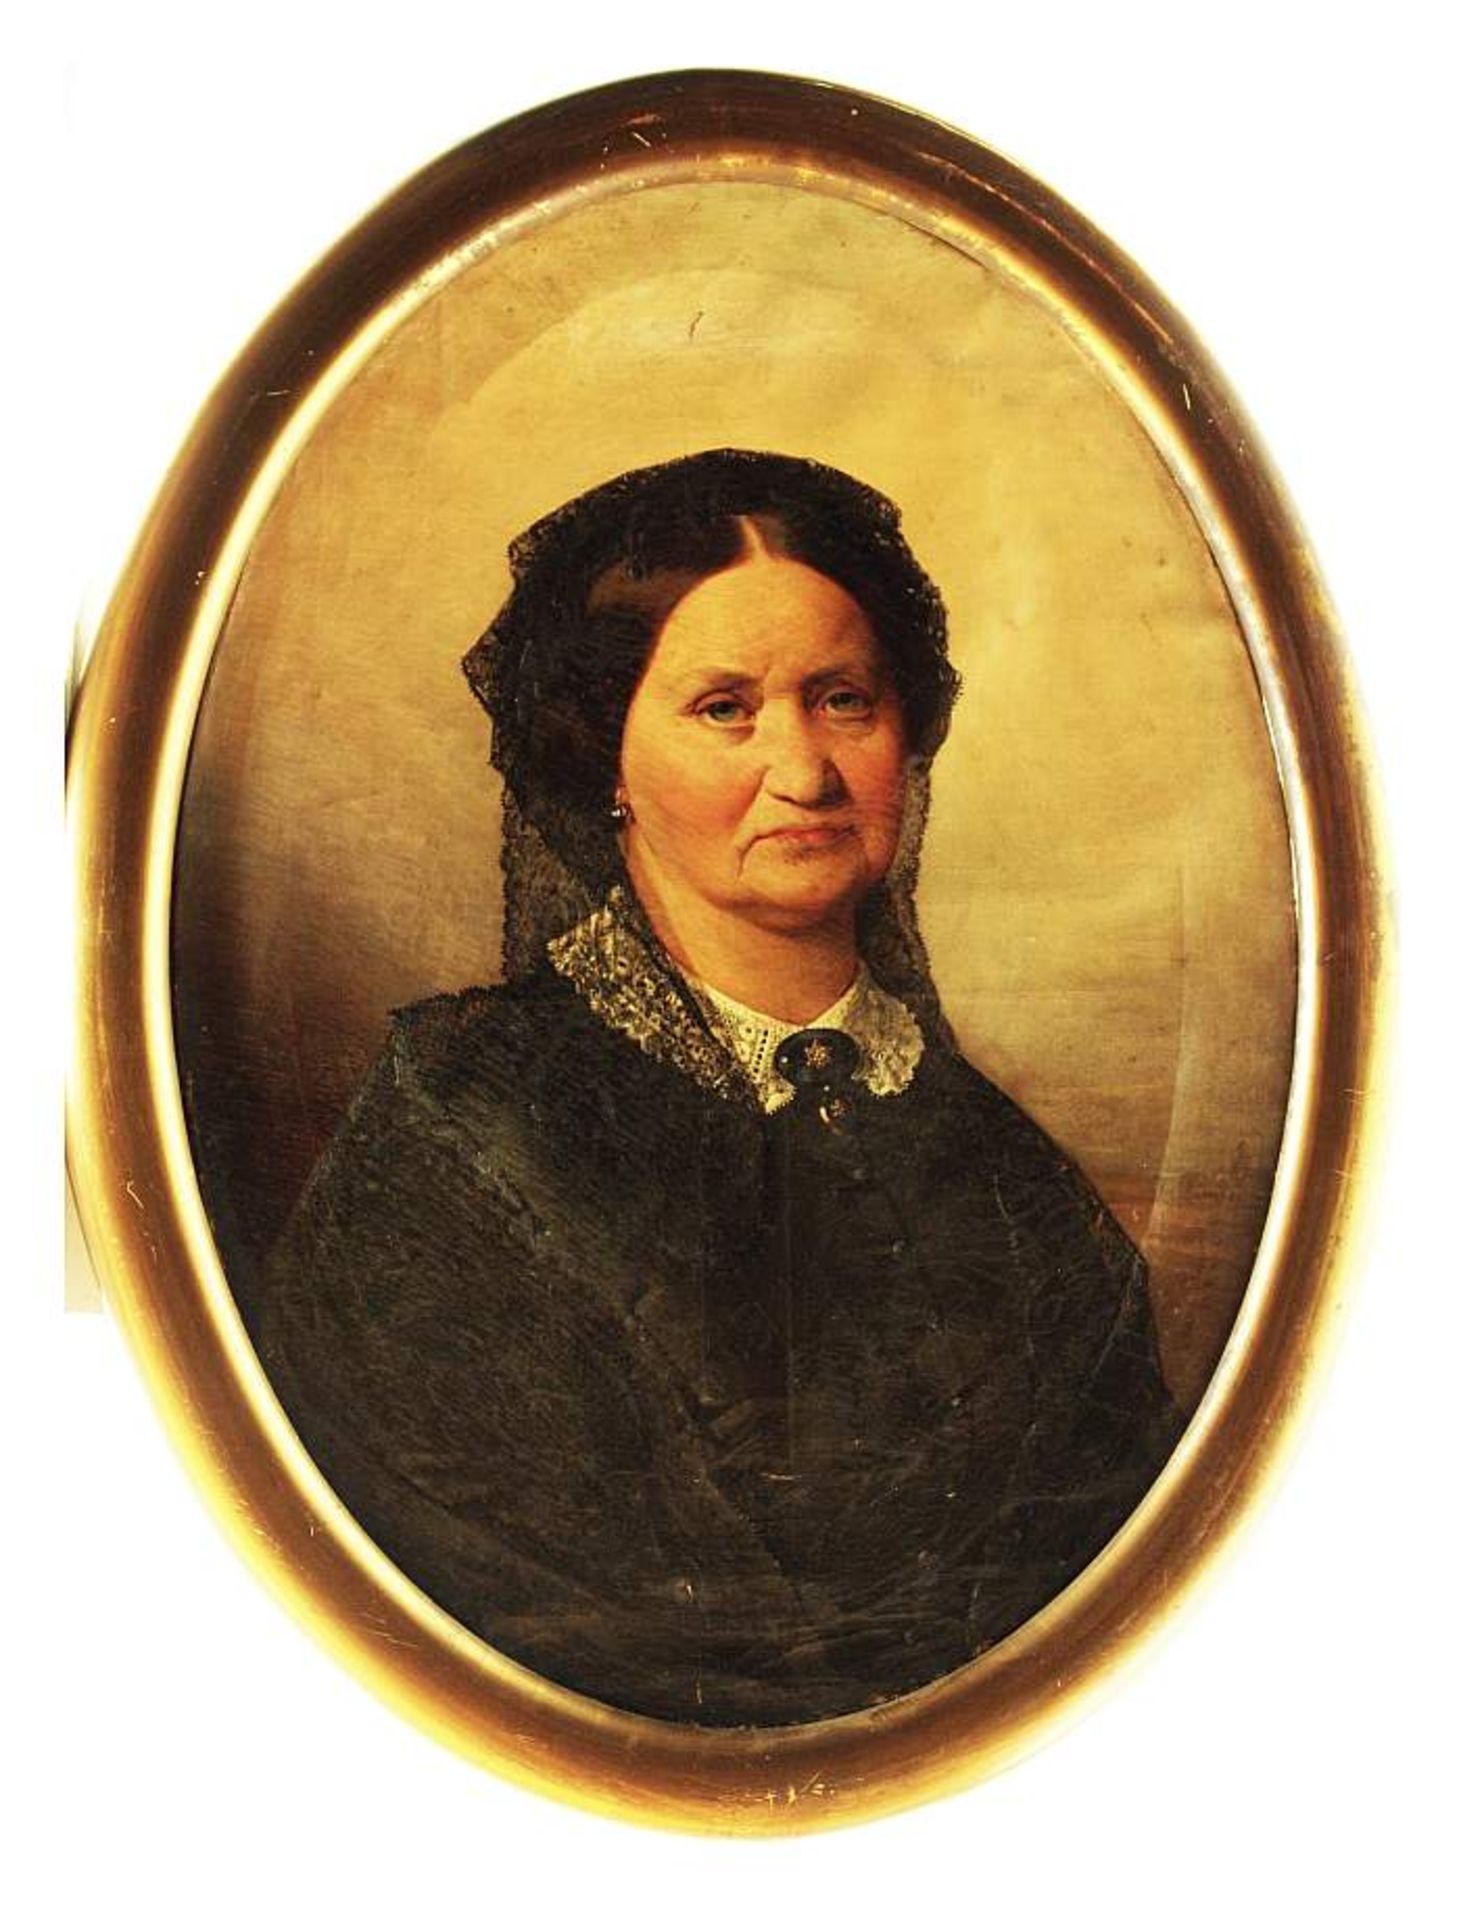 HAGEN-SCHWARZ, Julie Wilhelmine. HAGEN-SCHWARZ, Julie Wilhelmine. 1824 - 1902. Porträt einer